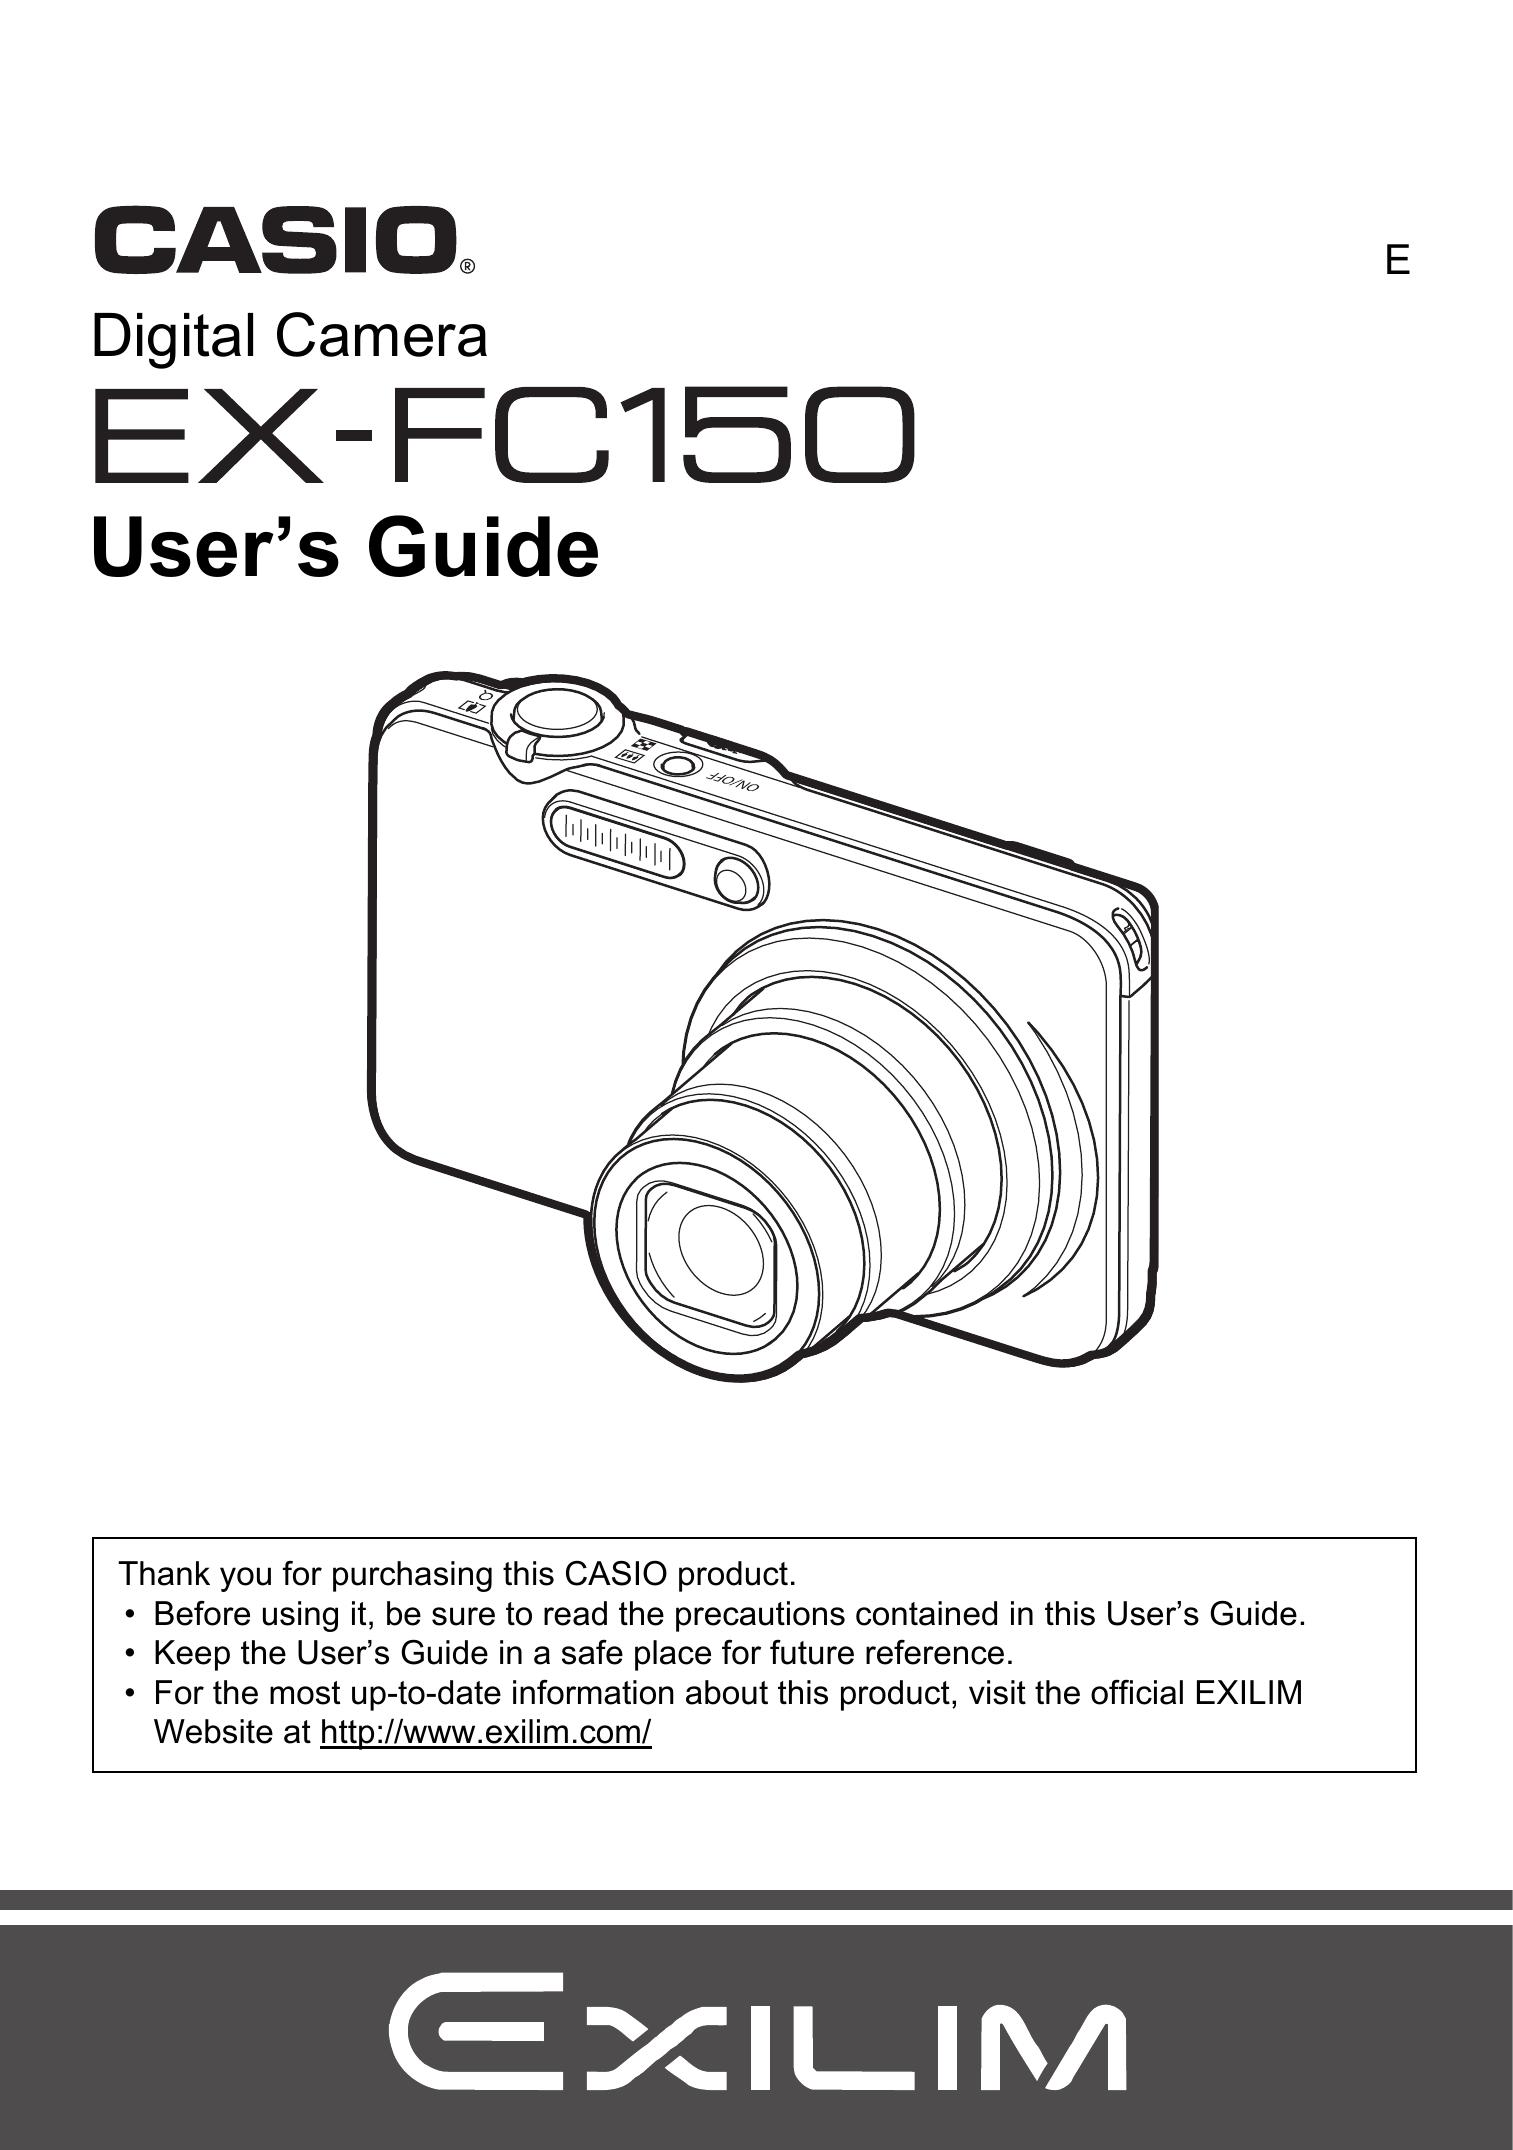 Casio EX-FC150 Digital Camera User Manual